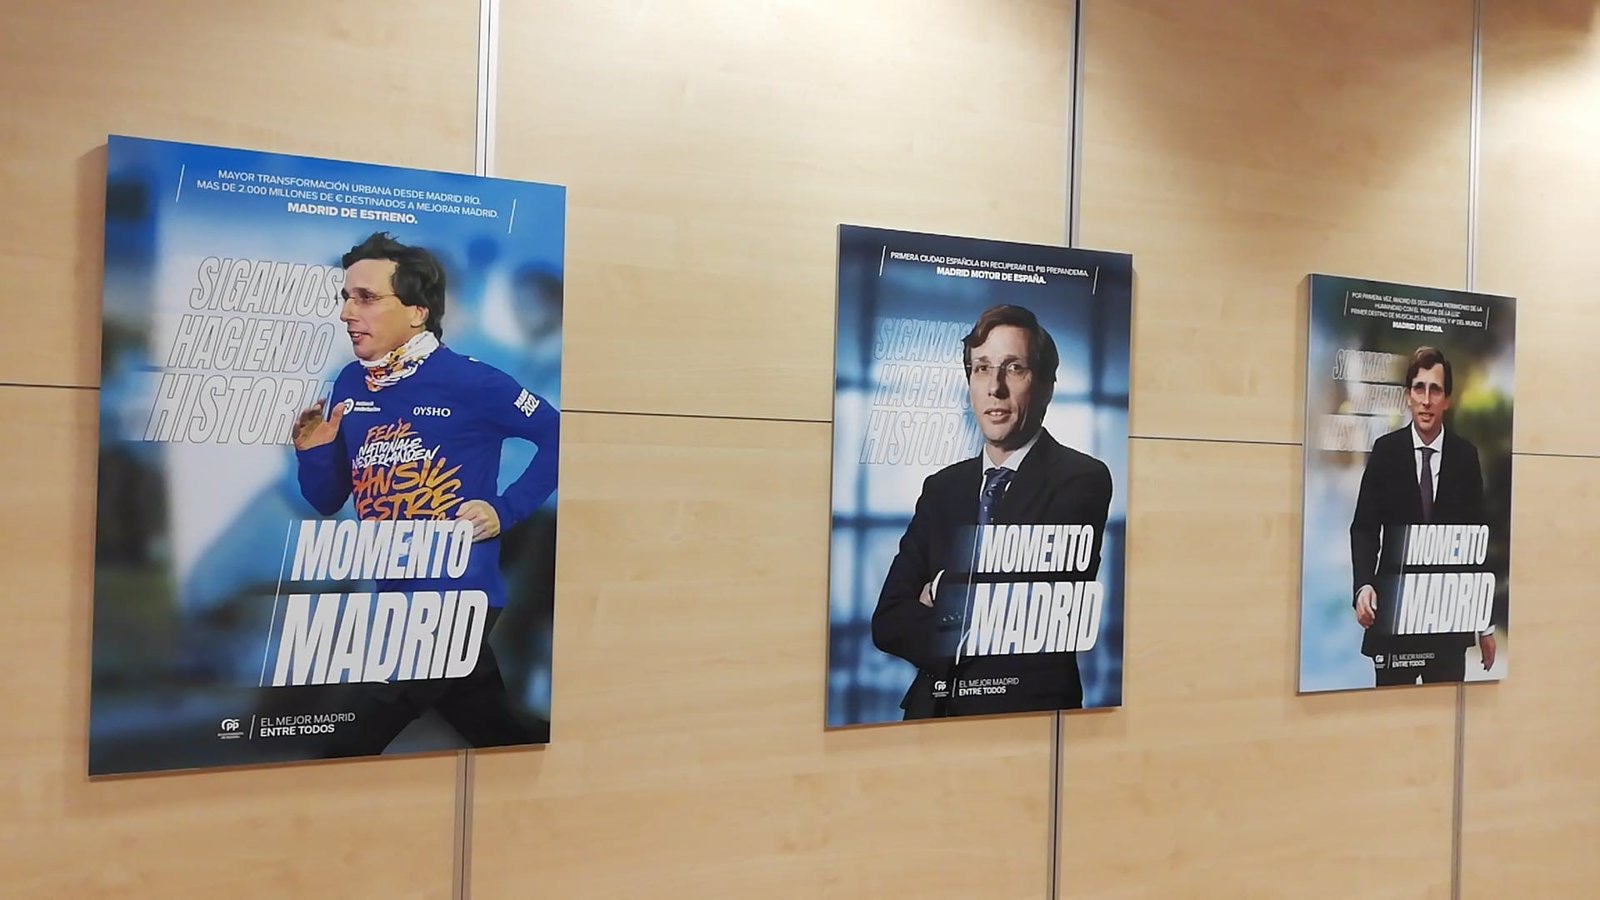 Martínez-Almeida lanza su campaña para las elecciones del 28M: 'Momento Madrid. Sigamos haciendo historia'